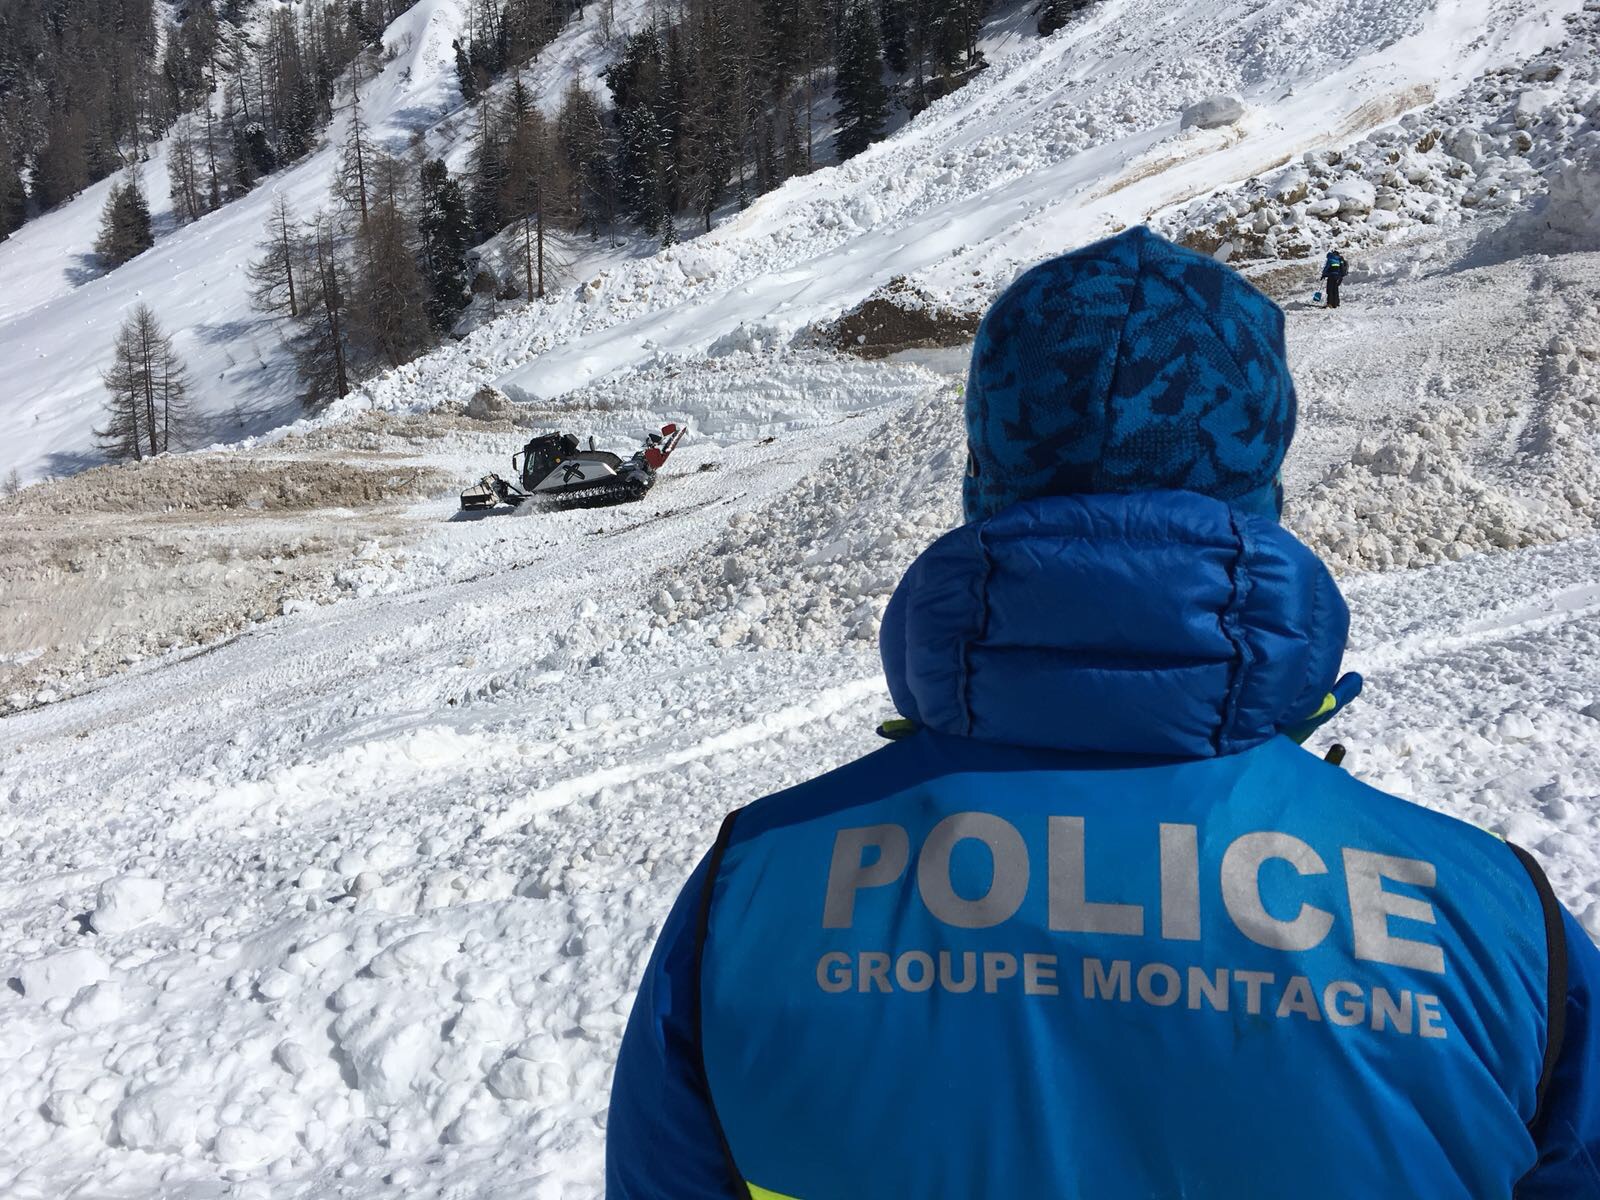 Sur le site de l'avalanche, les recherches actives sont interrompues depuis le 21 mars, mais des inspections régulières sont planifiées afin de retrouver le corps du 4e disparu.